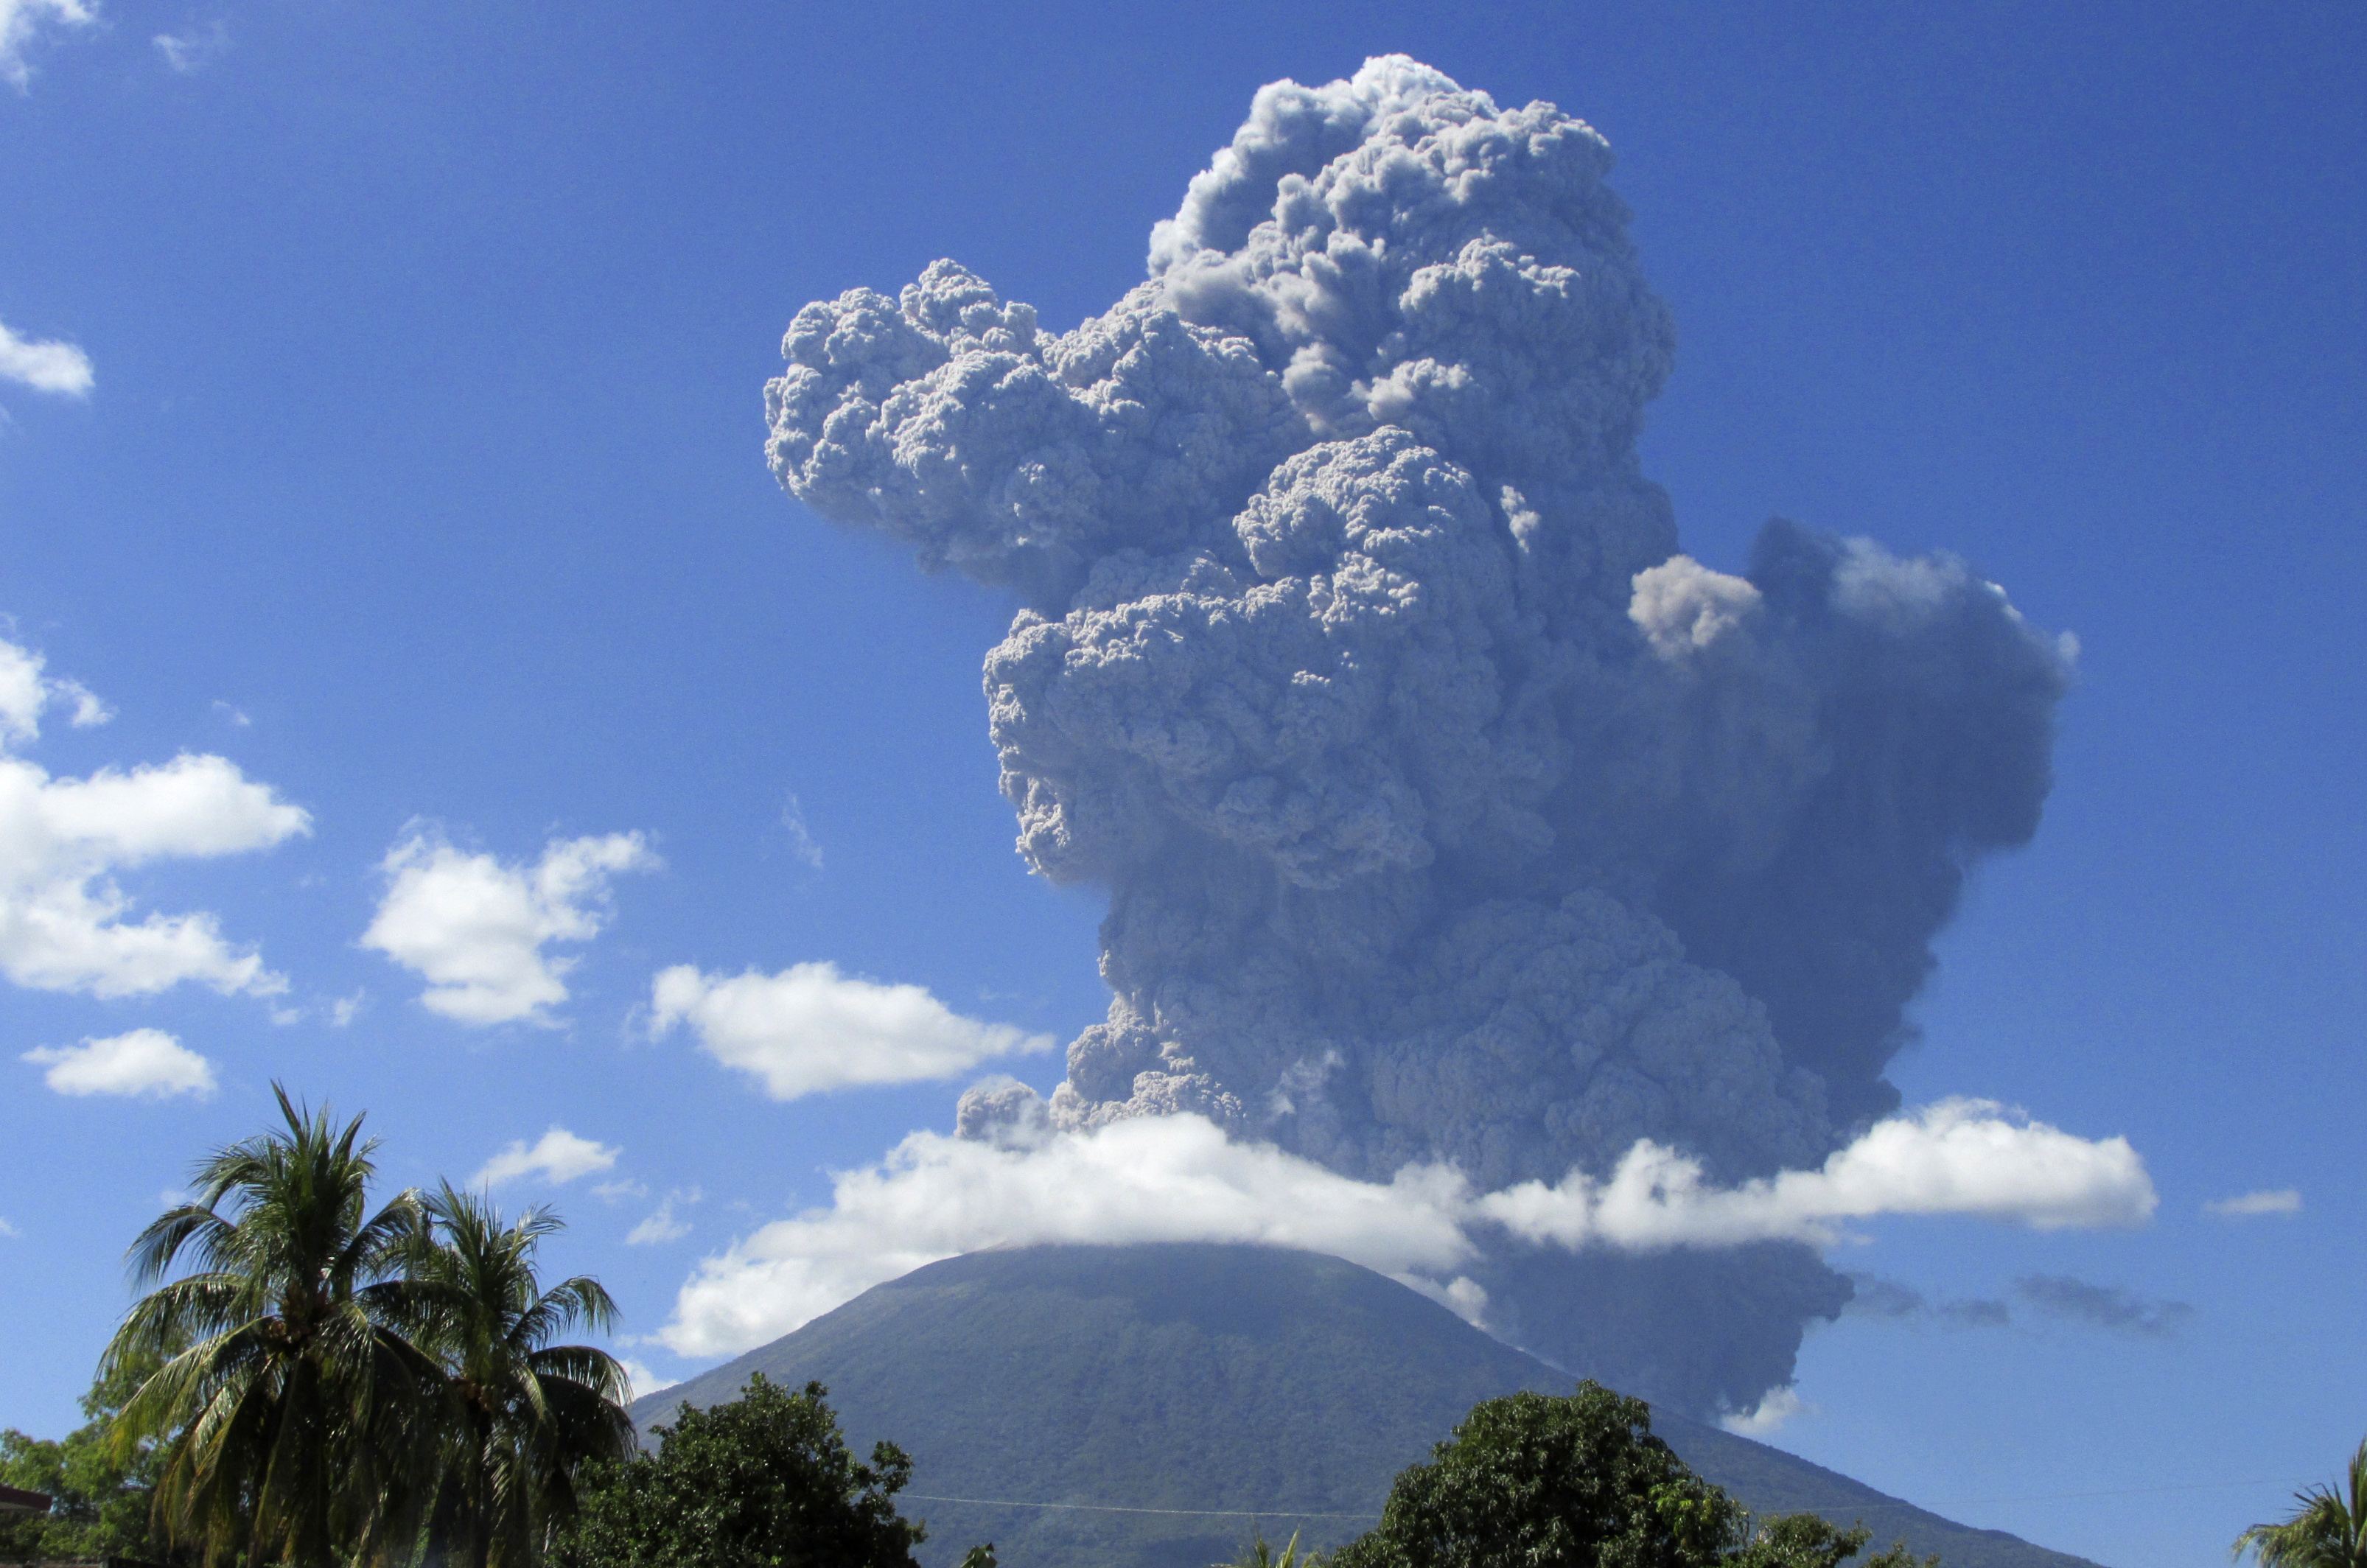 Ξύπνησε ένα από τα πιο ενεργά ηφαίστεια του Ελ Σαλβαδόρ